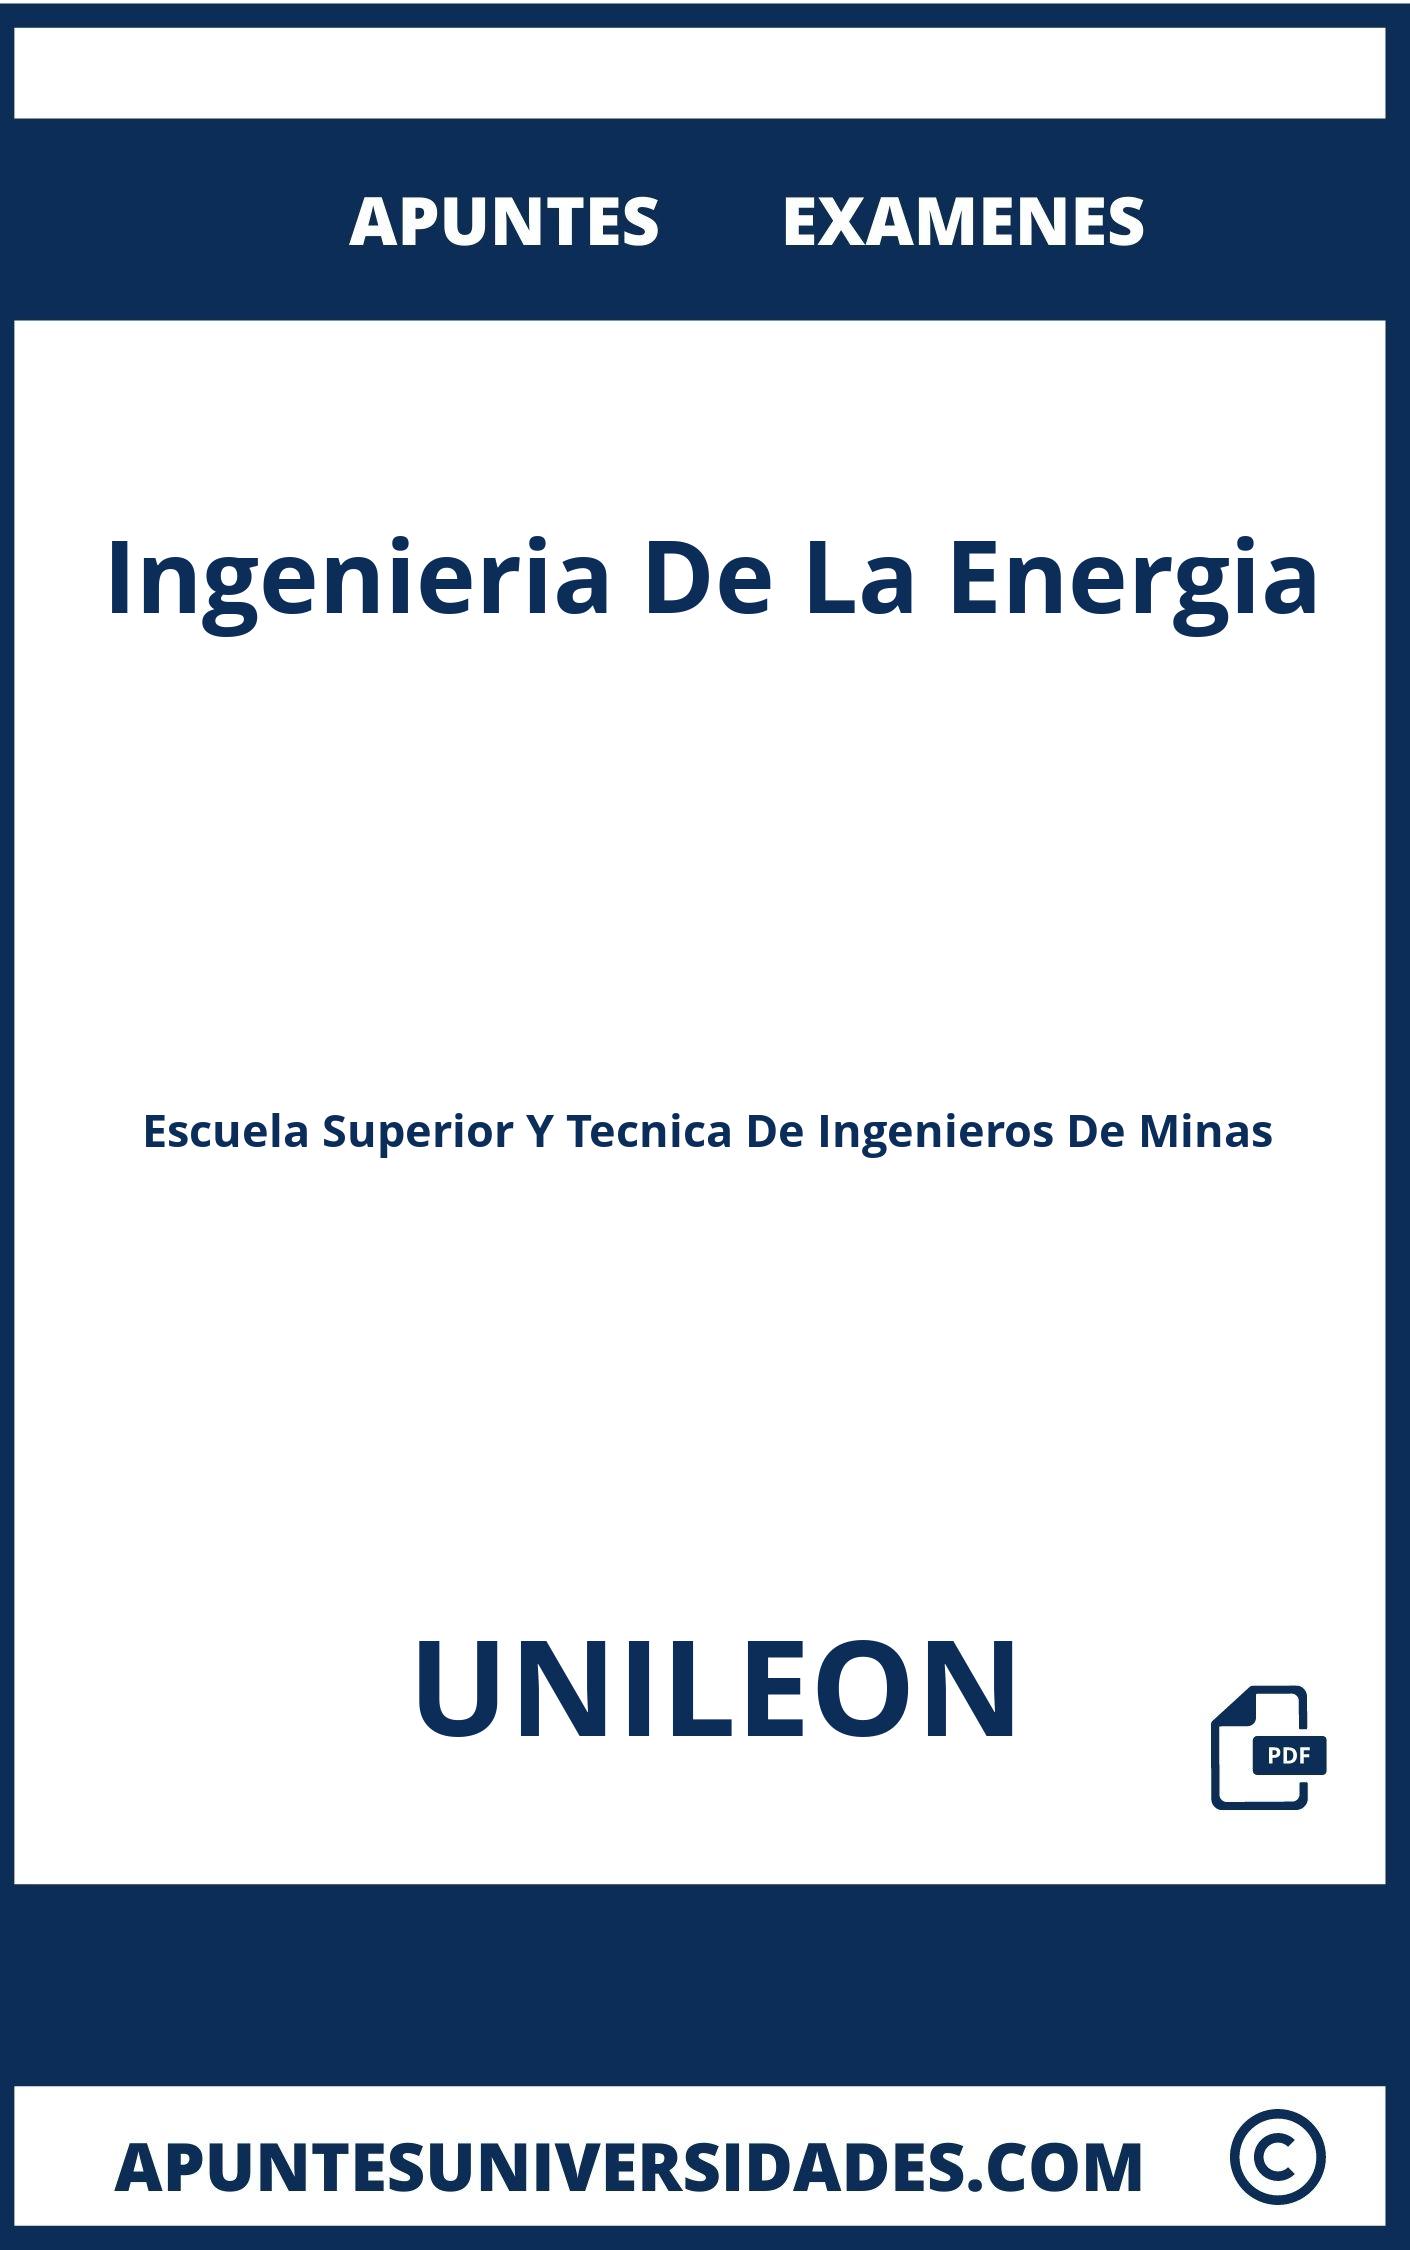 Apuntes y Examenes de Ingenieria De La Energia UNILEON